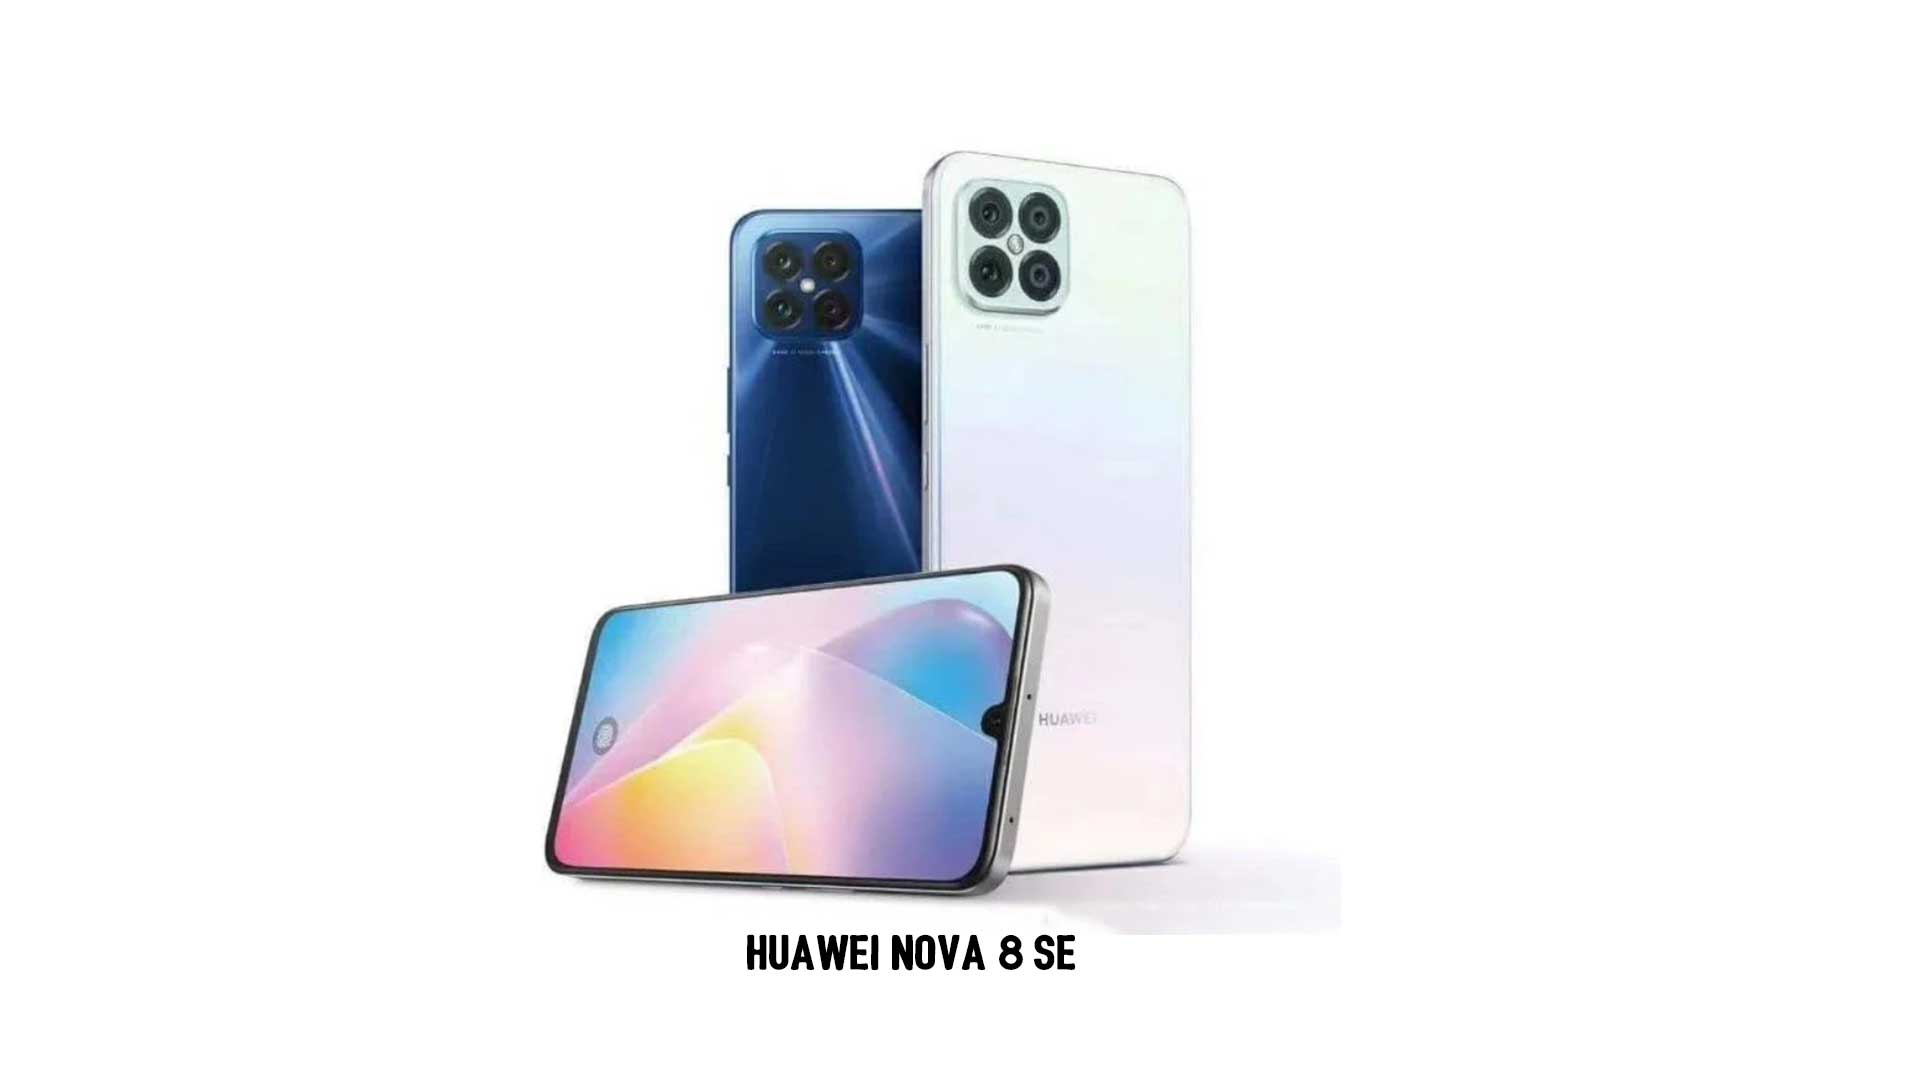 Huawei-Nova-8-SE